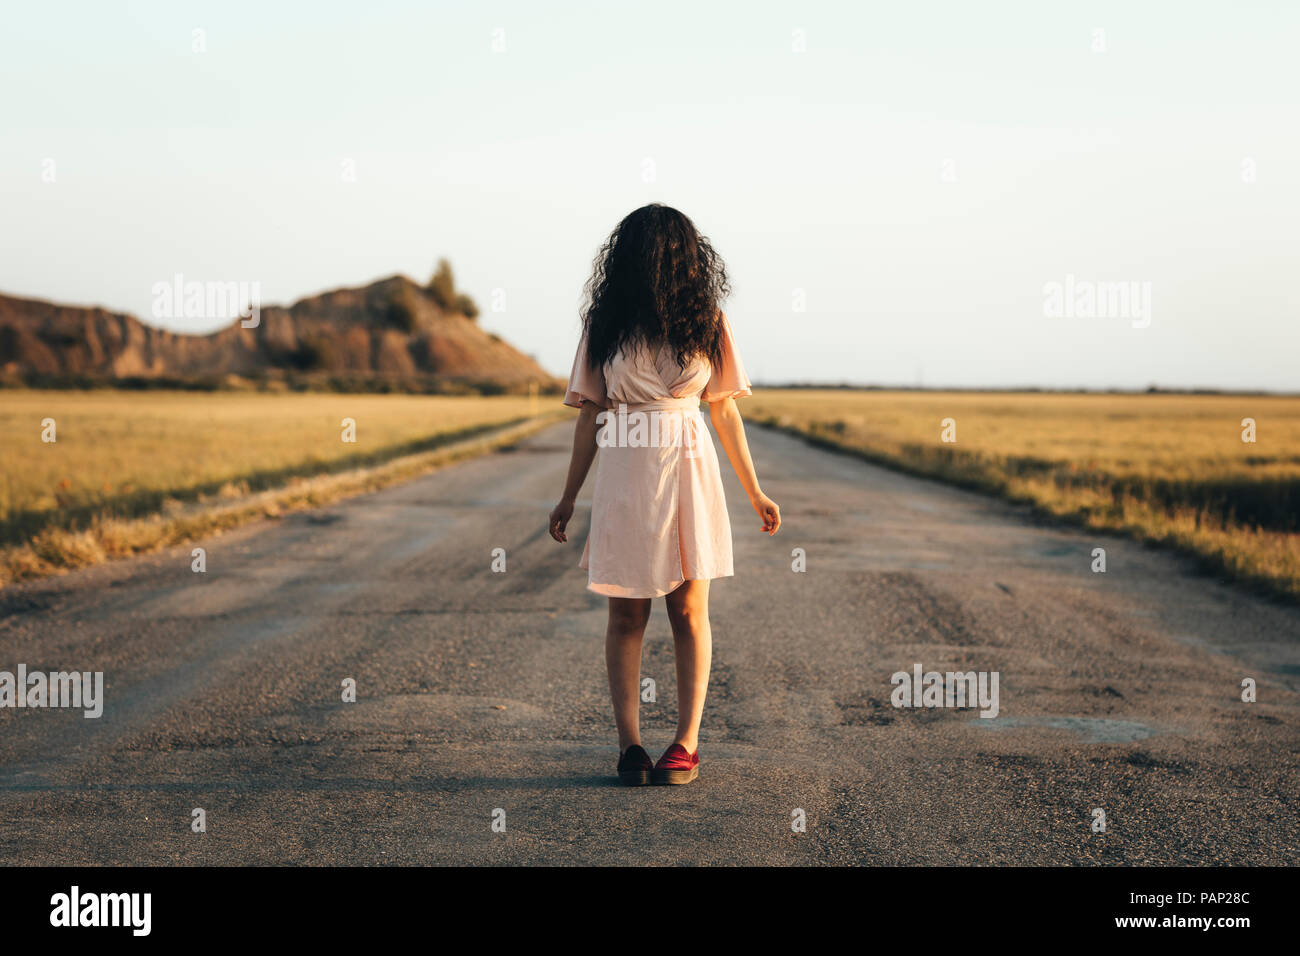 Young woman standing on country road, cachant son visage derrière les cheveux bruns Banque D'Images